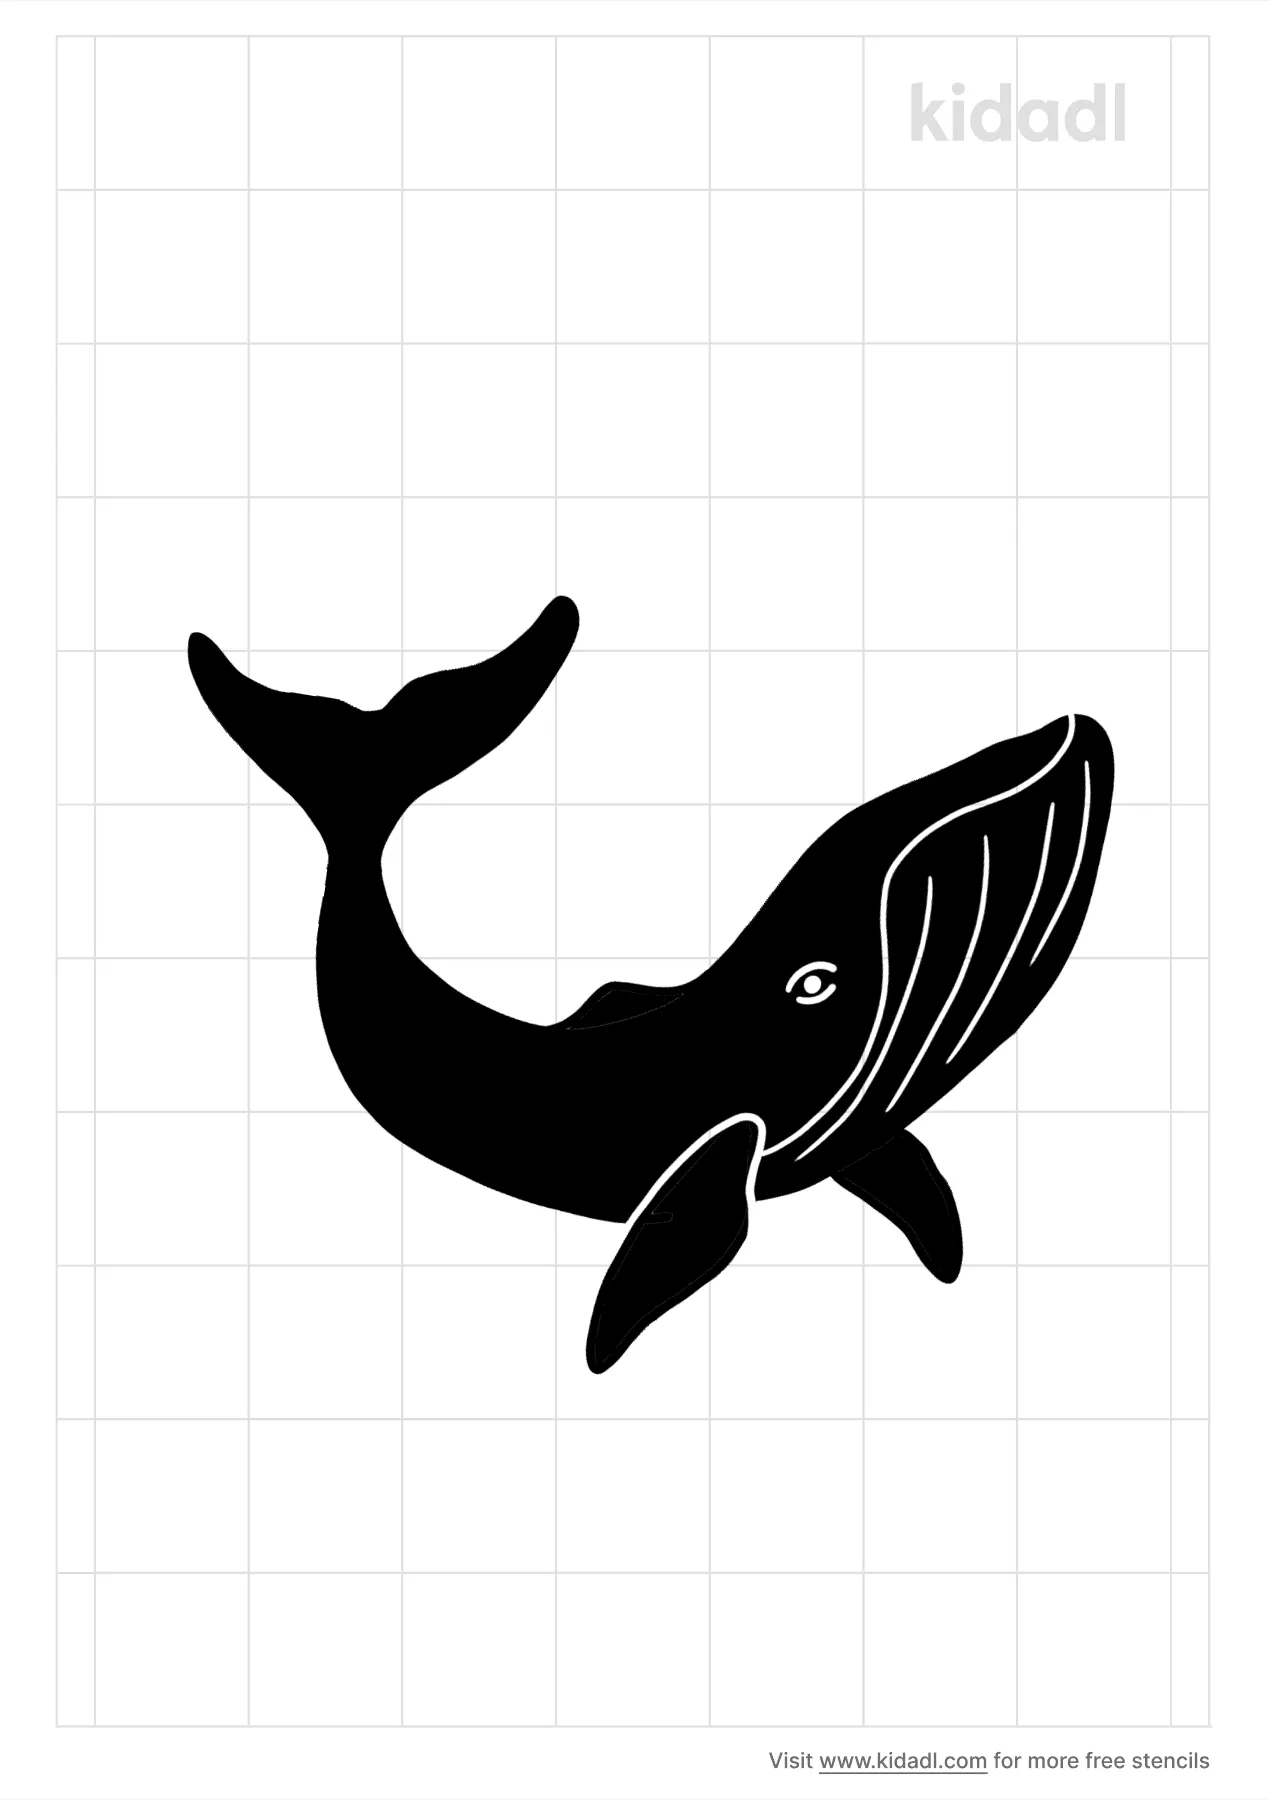 Humpback Whale Stencils Free Printable Fish Stencils Kidadl And Fish Stencils Free Printable Stencils Kidadl